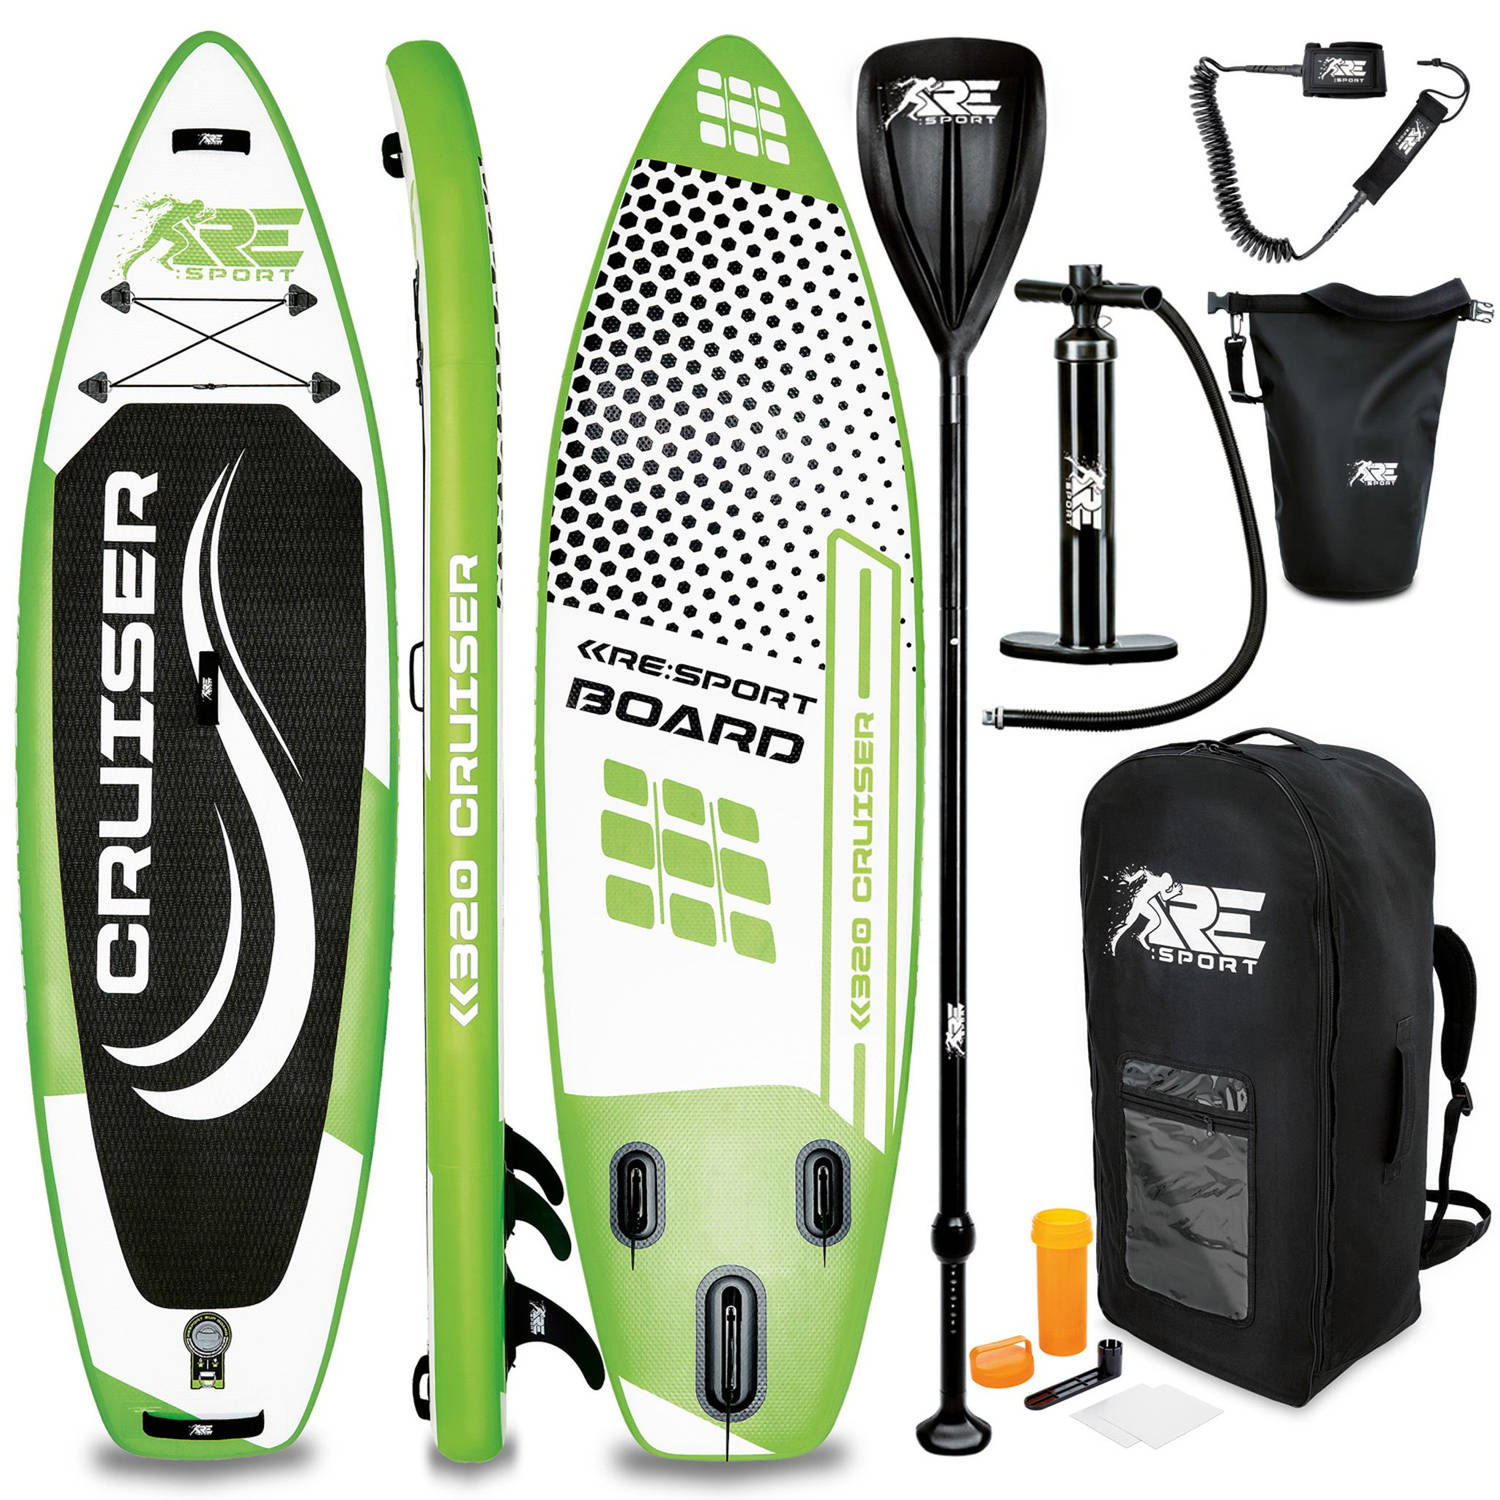 Re: Sport-sup Board 320 Cm Groen-supboard- Opblaasbaar- Stand Up Paddle Set- Surfboard --Paddling Pr